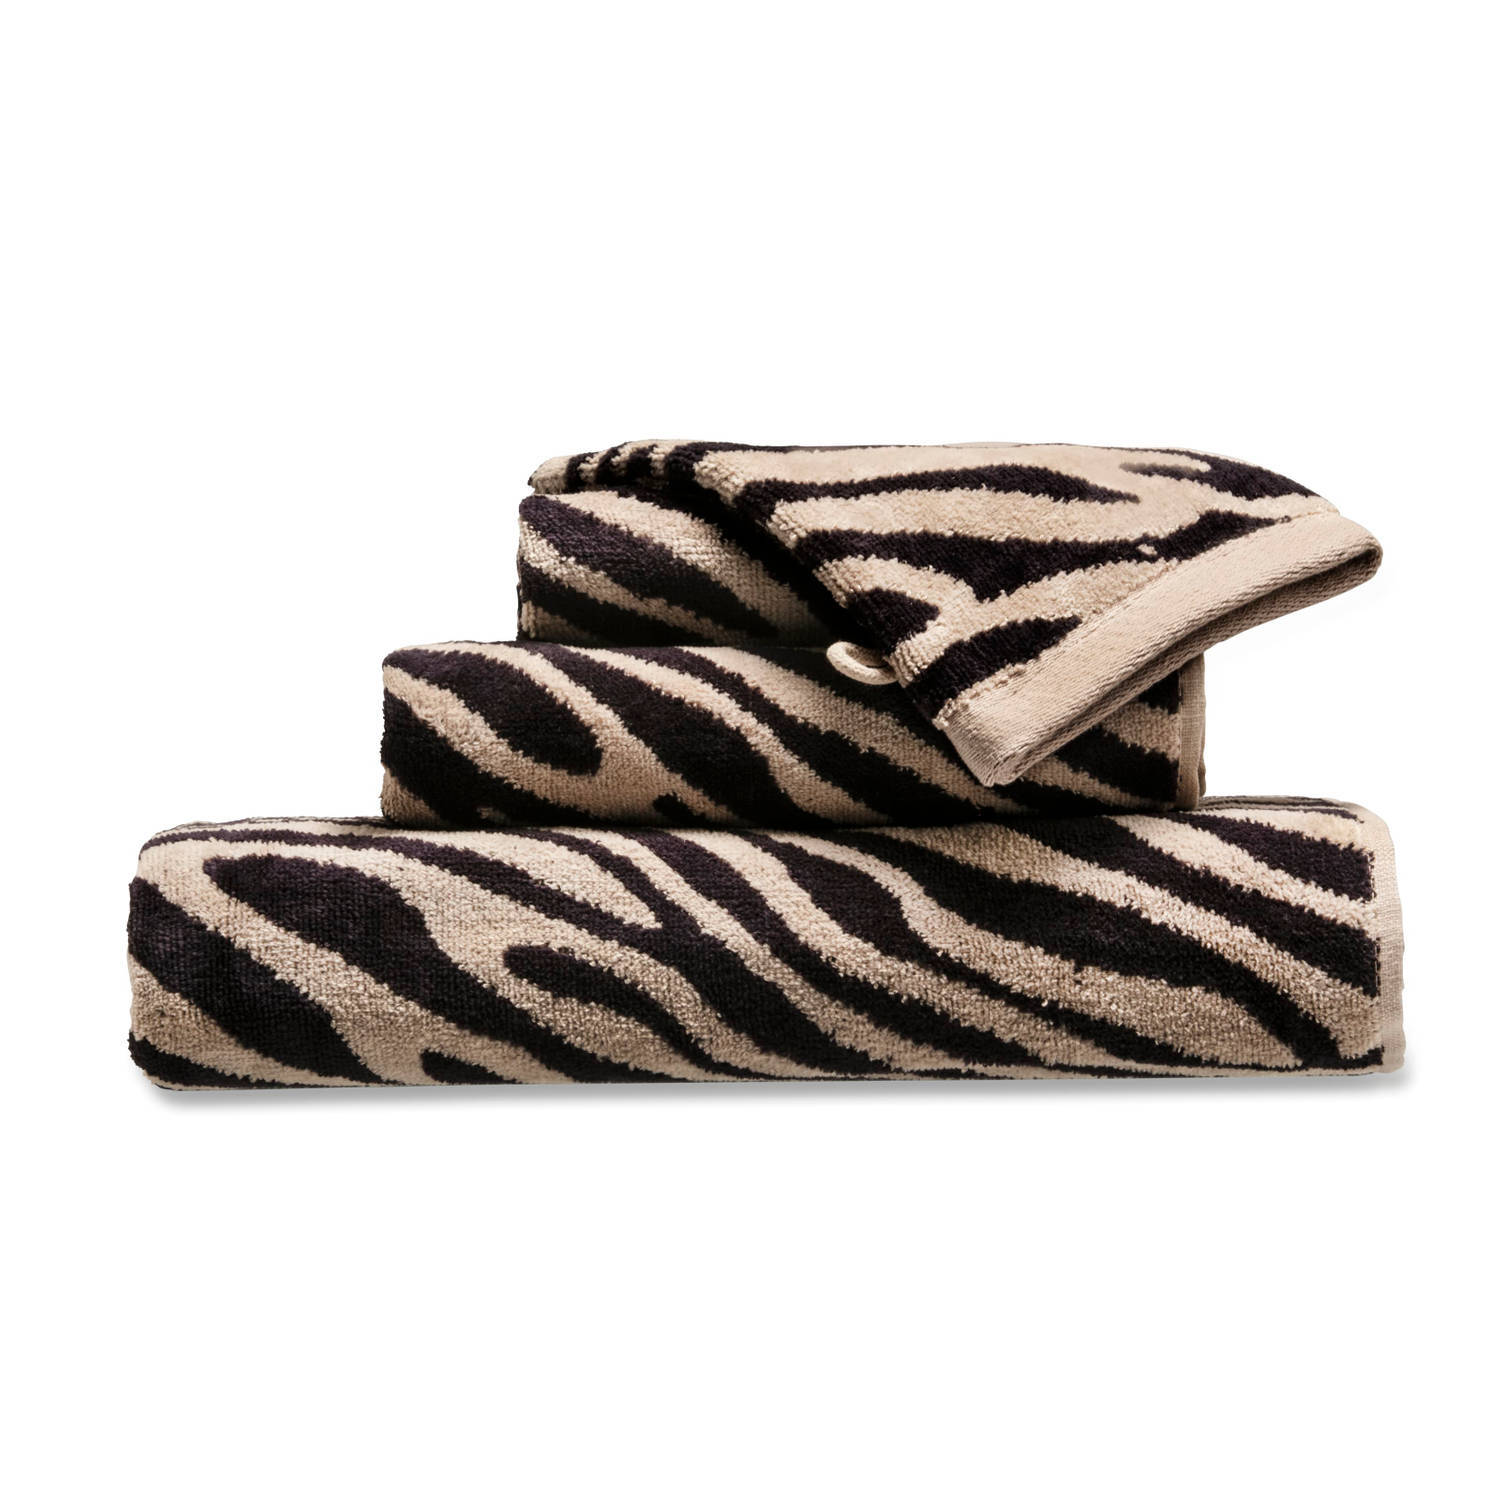 Blokker handdoek zebra - beige/zwart - 70x140 cm